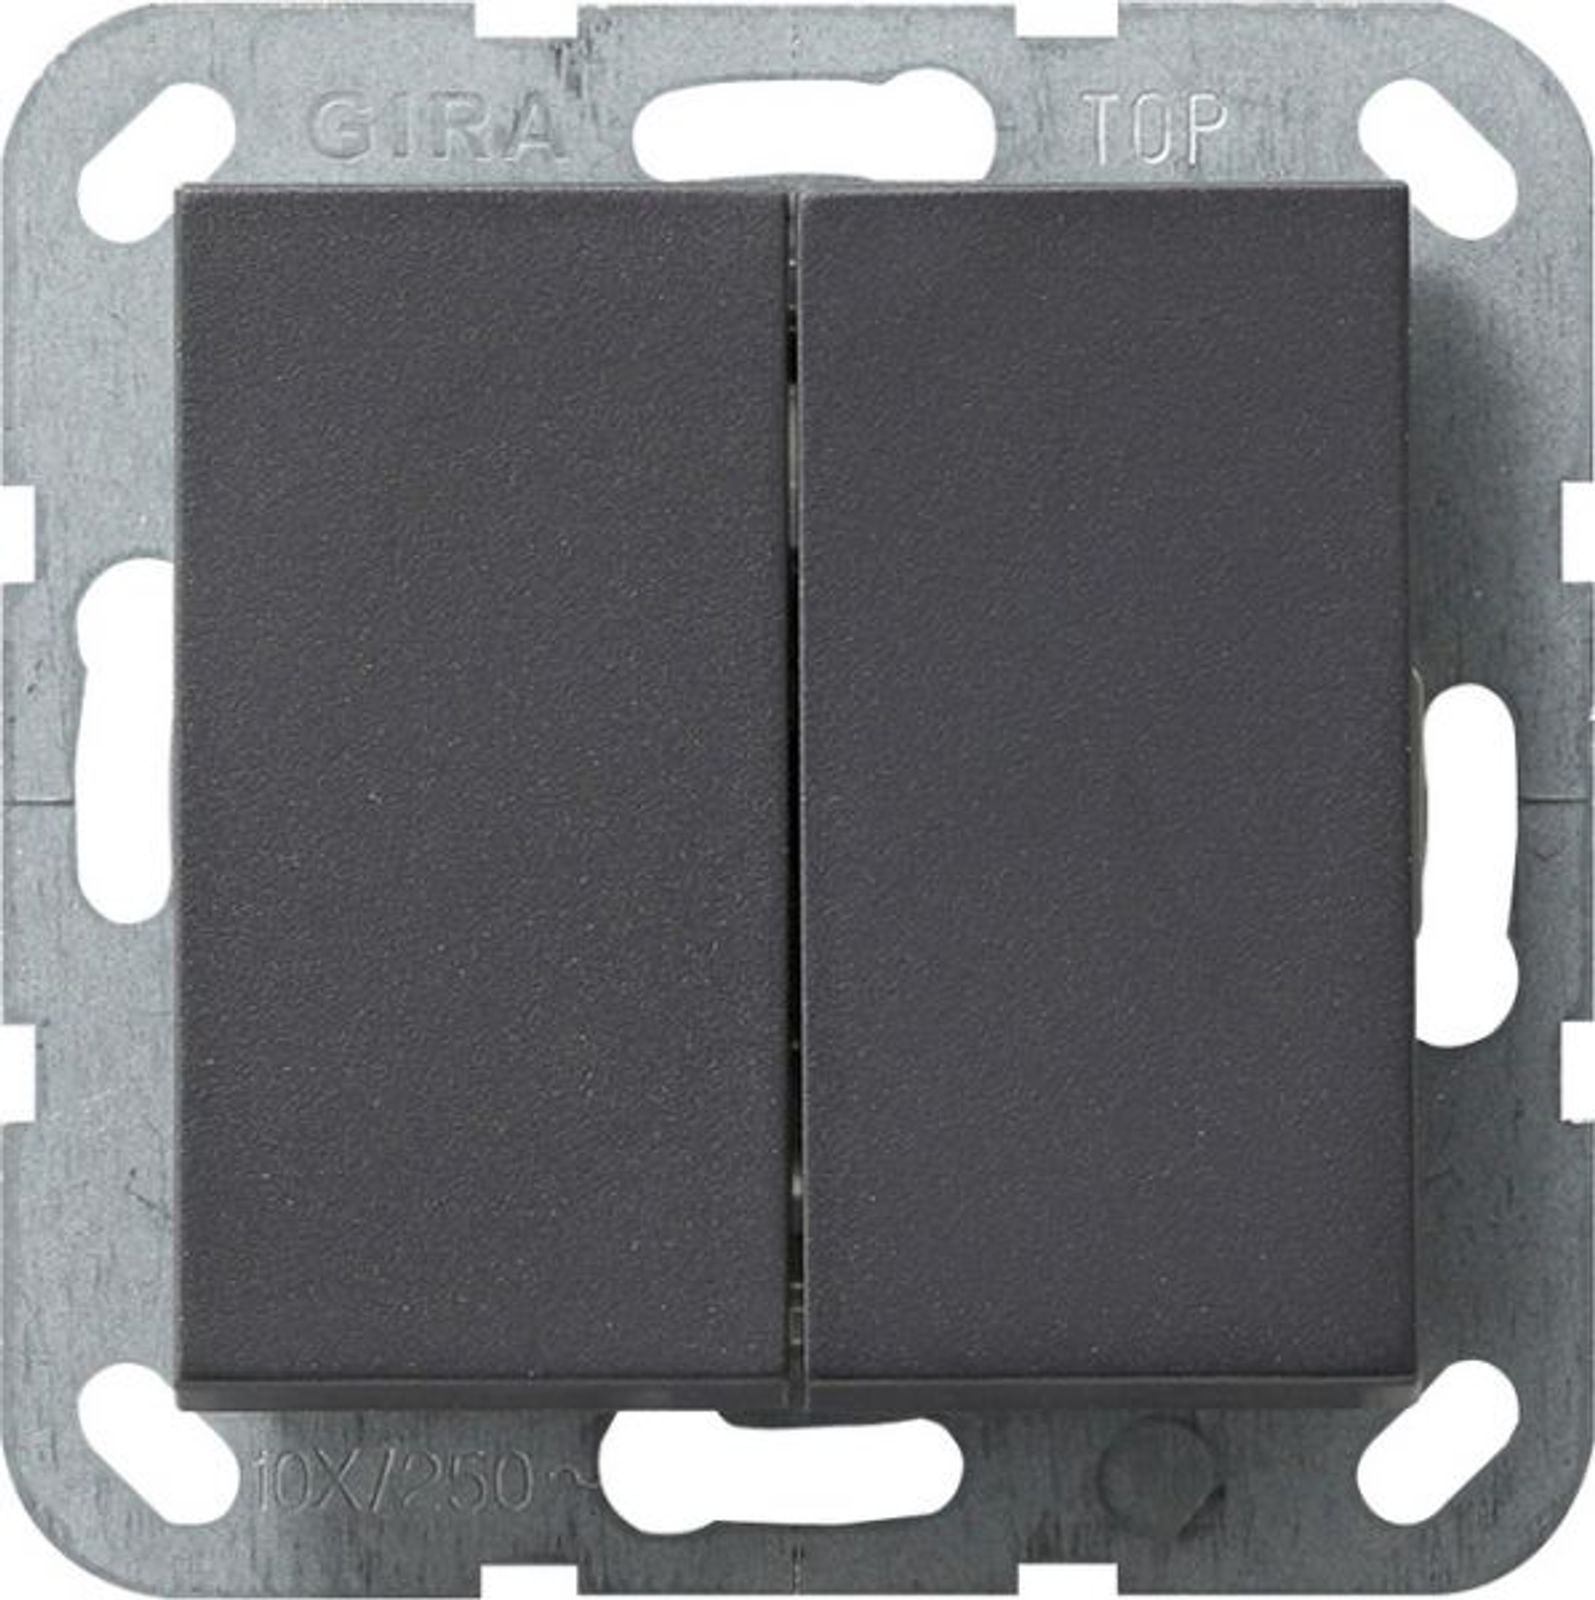 Gira 2-fach-Wechselschalter Taster anthrazit UP System 55 012828 IP20 2-fach